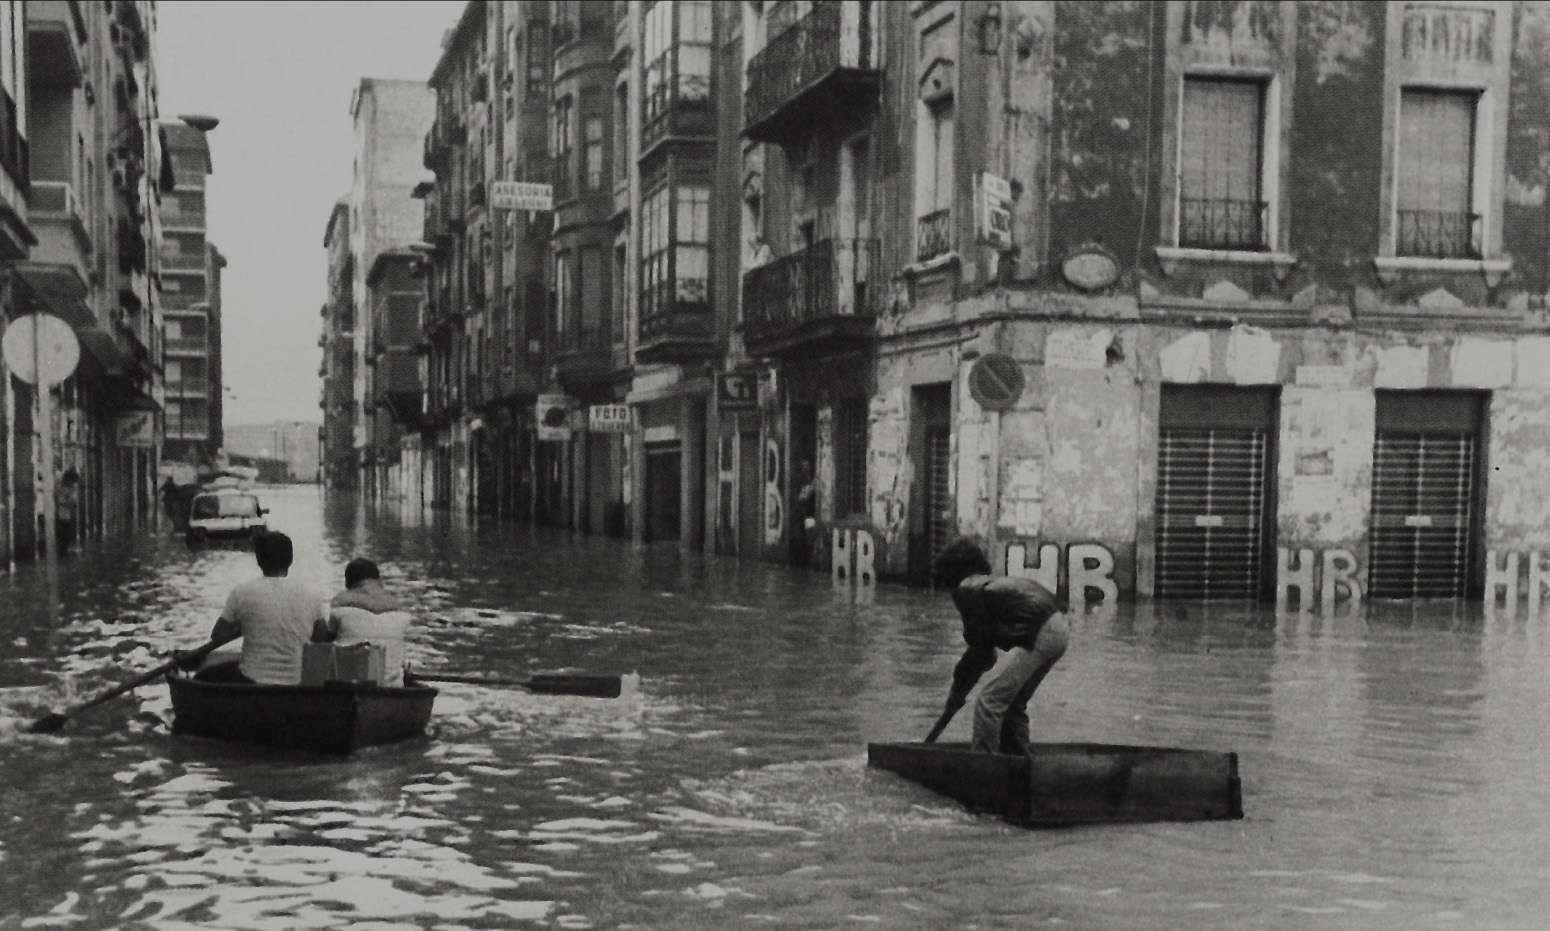 Imagen en blanco y negro donde aparecen edificación antiguos. El agua inunda las calles, alcanzando unos 50 cm. De altura. Varias personas se desplazan por el agua en improvisadas barcas creadas con maderas. 